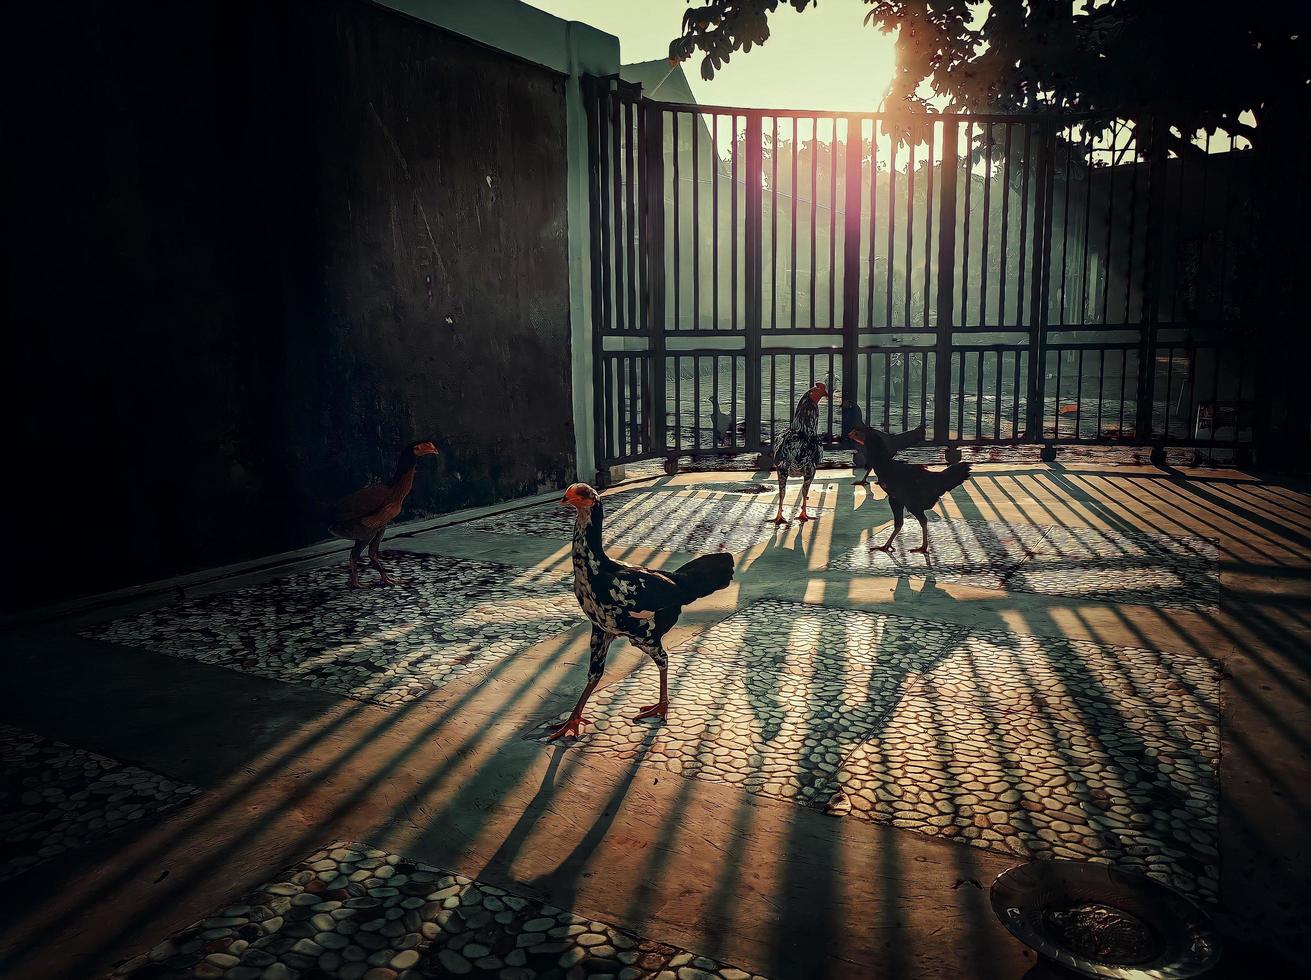 foto di un pollo bugiardo che colonizza una casa in un complesso residenziale al mattino con il sole che entra nell'ombra del recinto